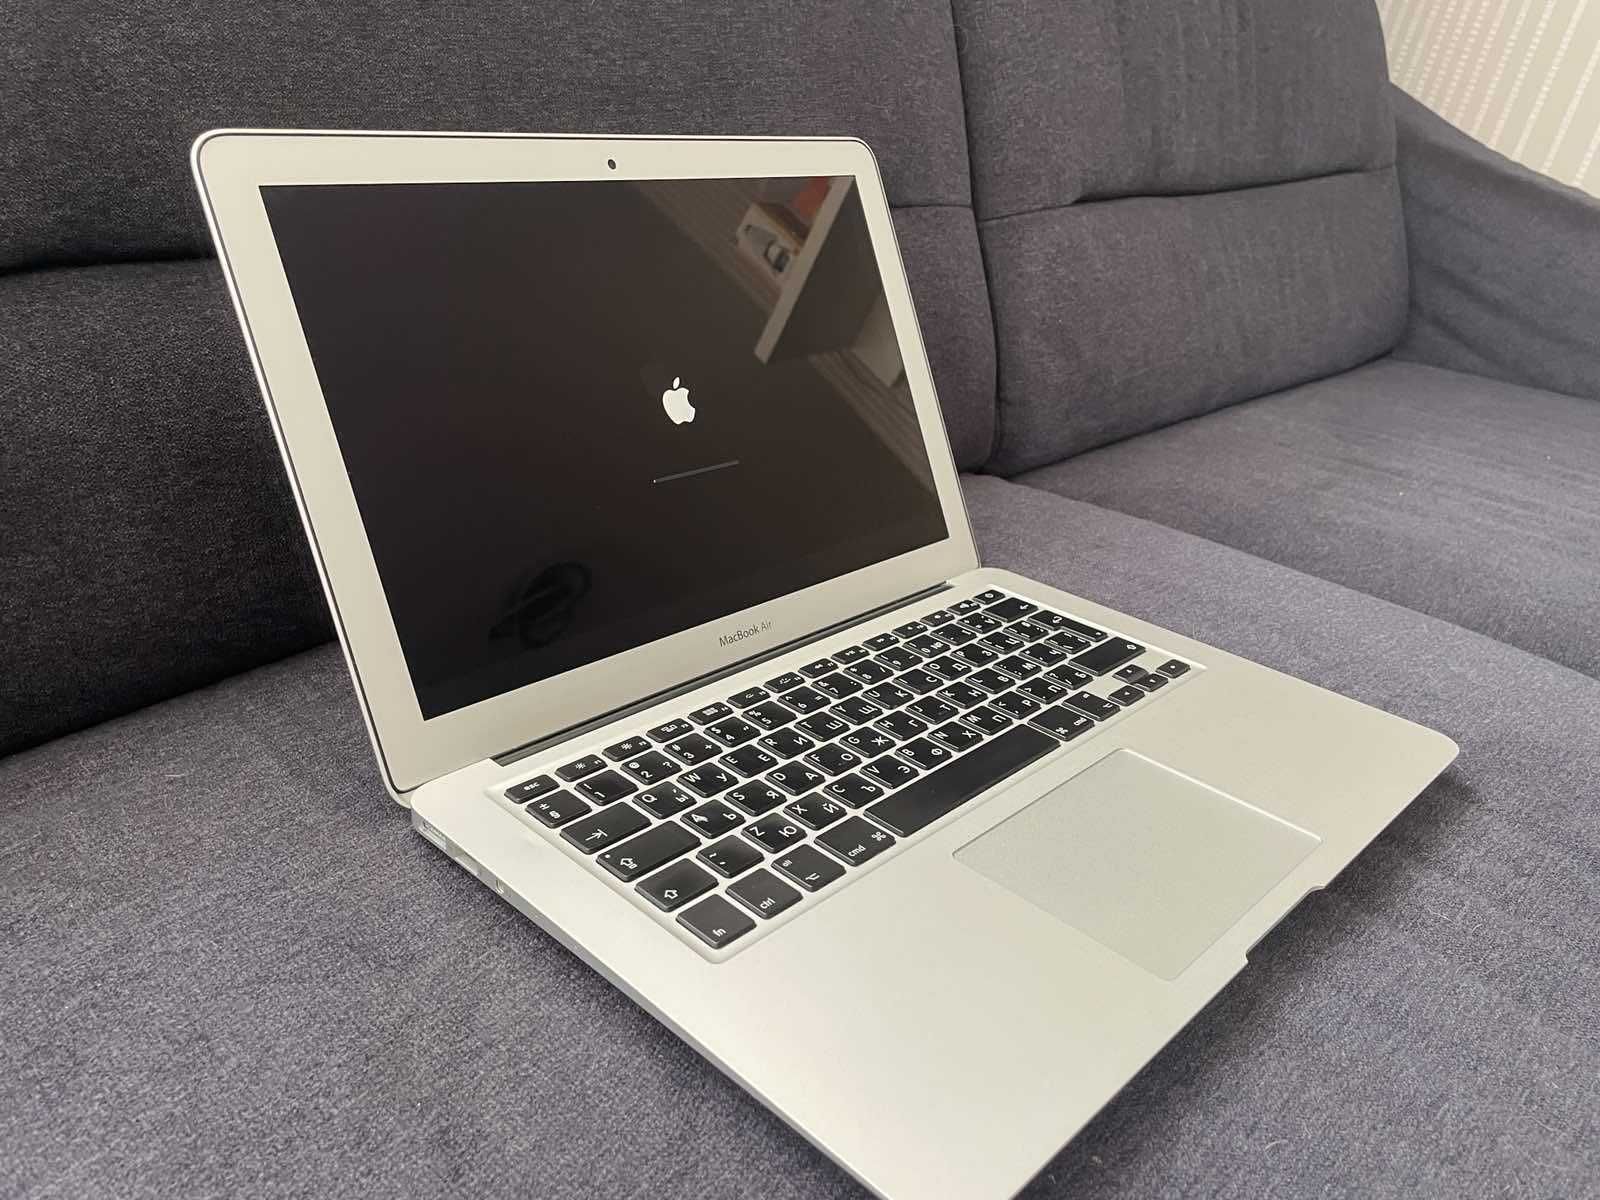 MacBook Аir 13" Еarly 2015 1'6 GHz Intel Core i5, 4 GB RAM